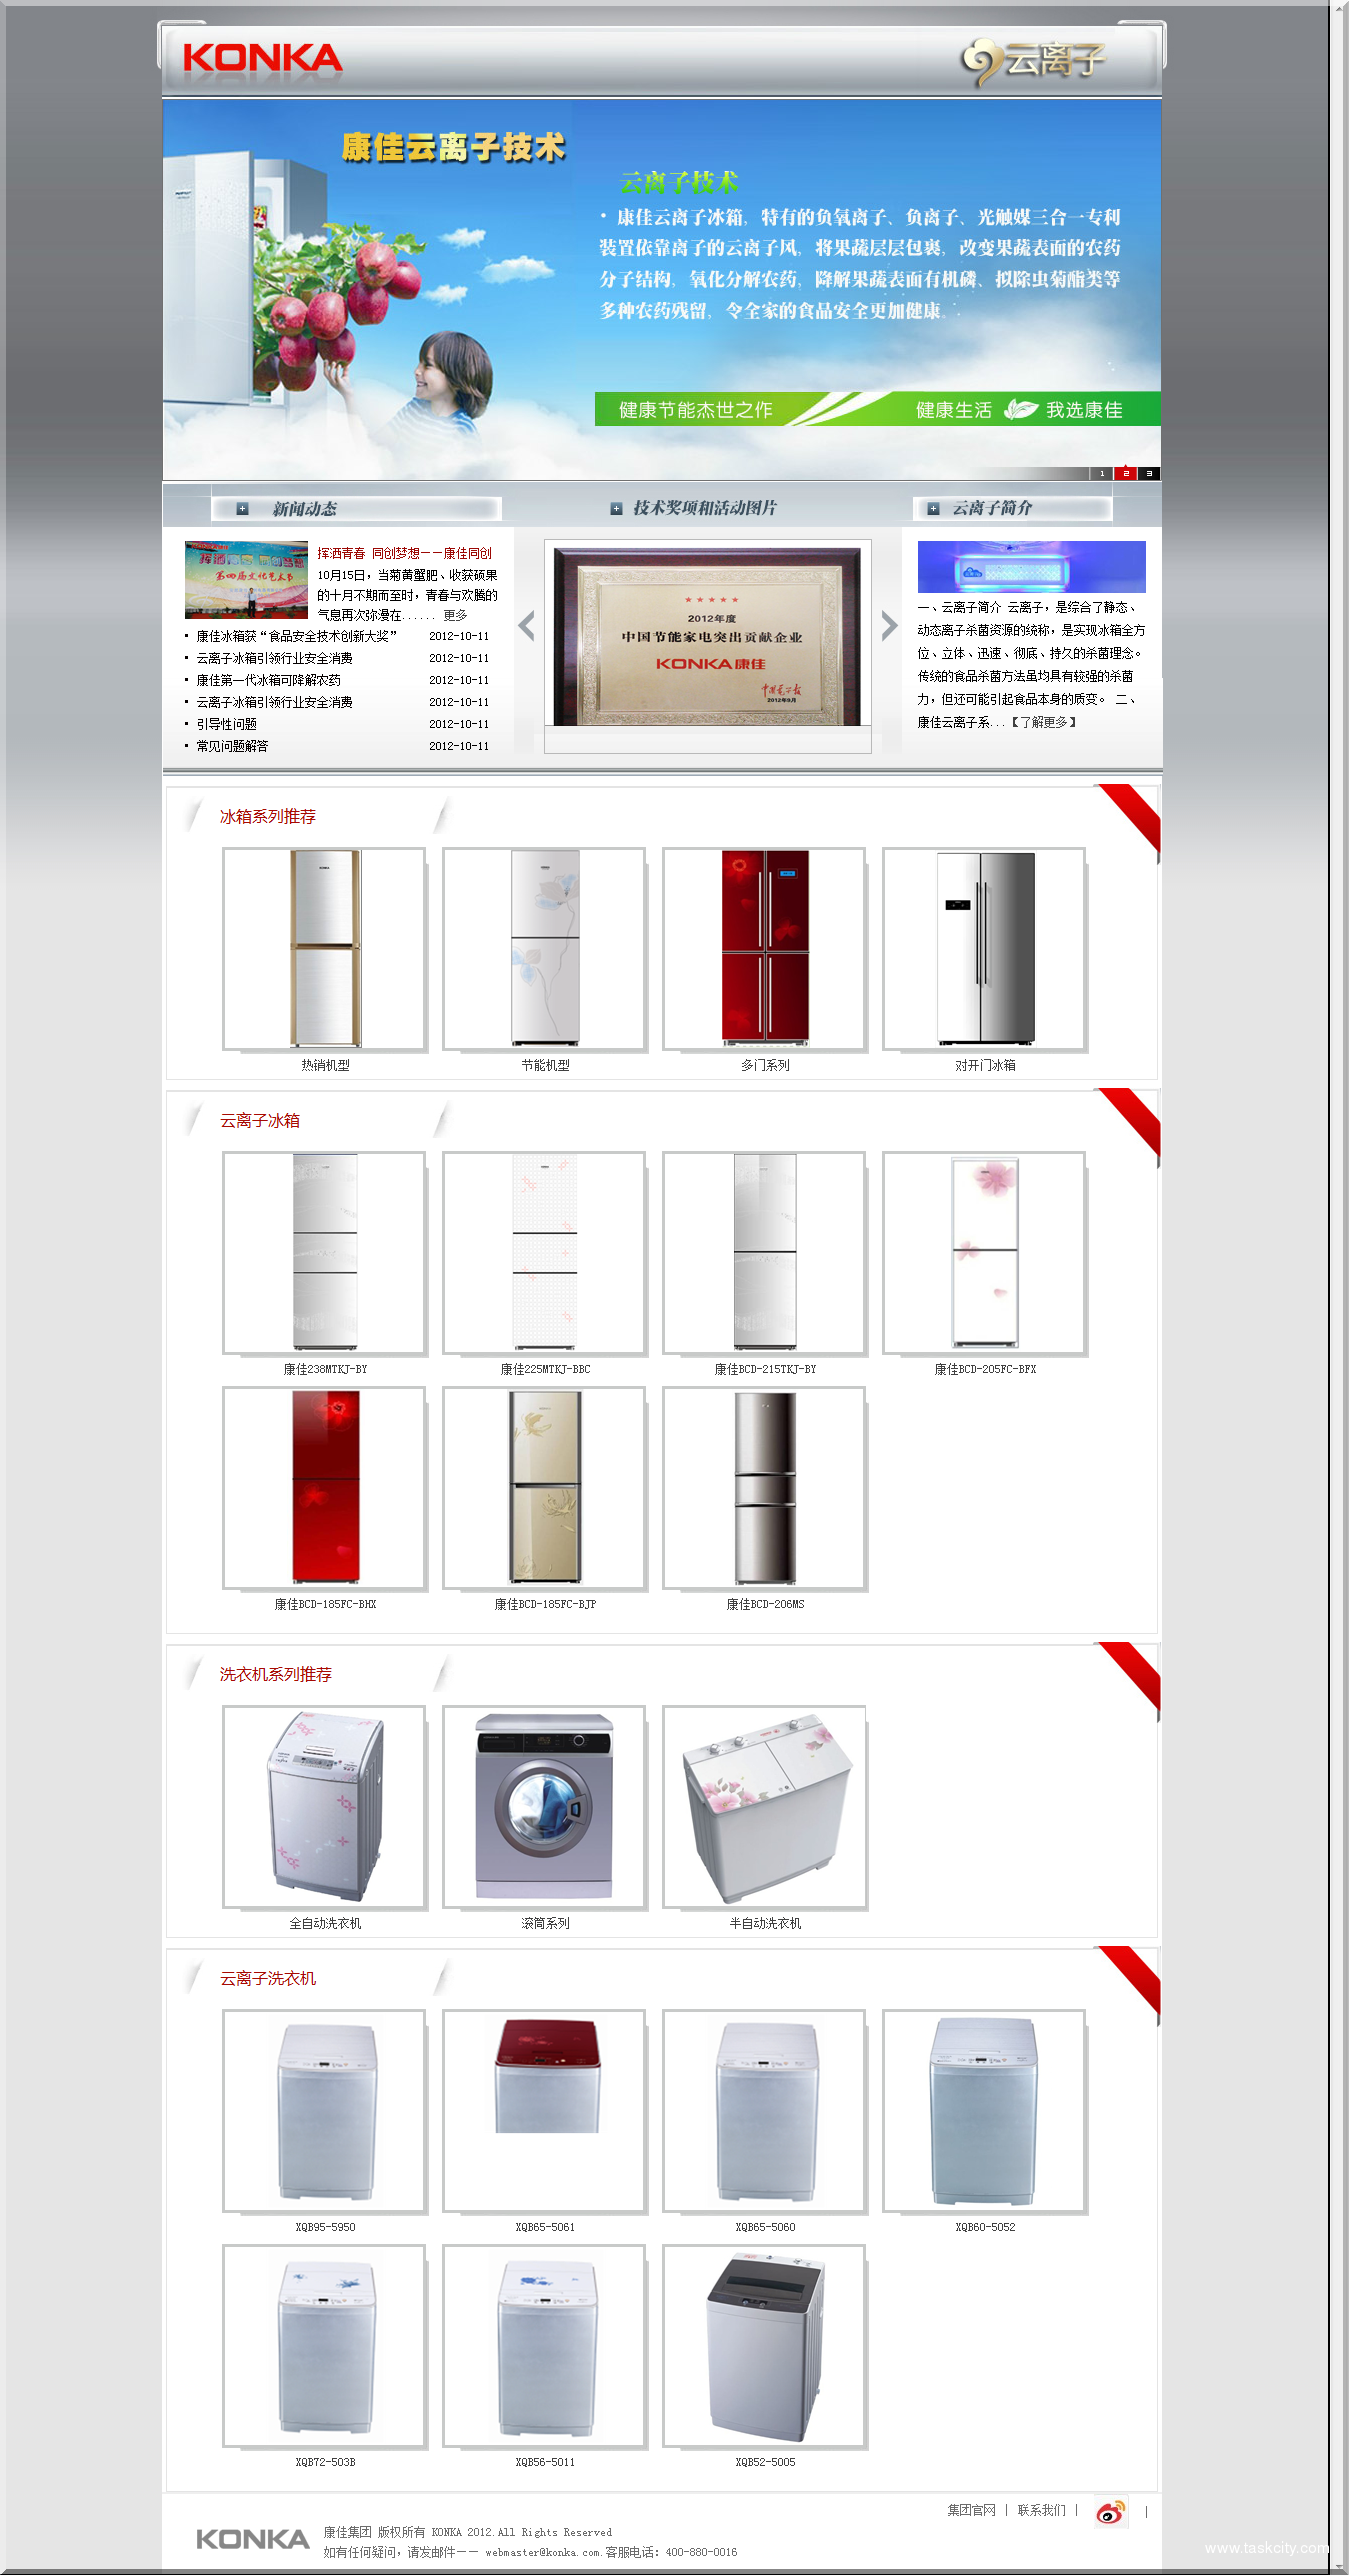 康佳白色家电产品—康佳冰箱、康佳洗衣机官方网站